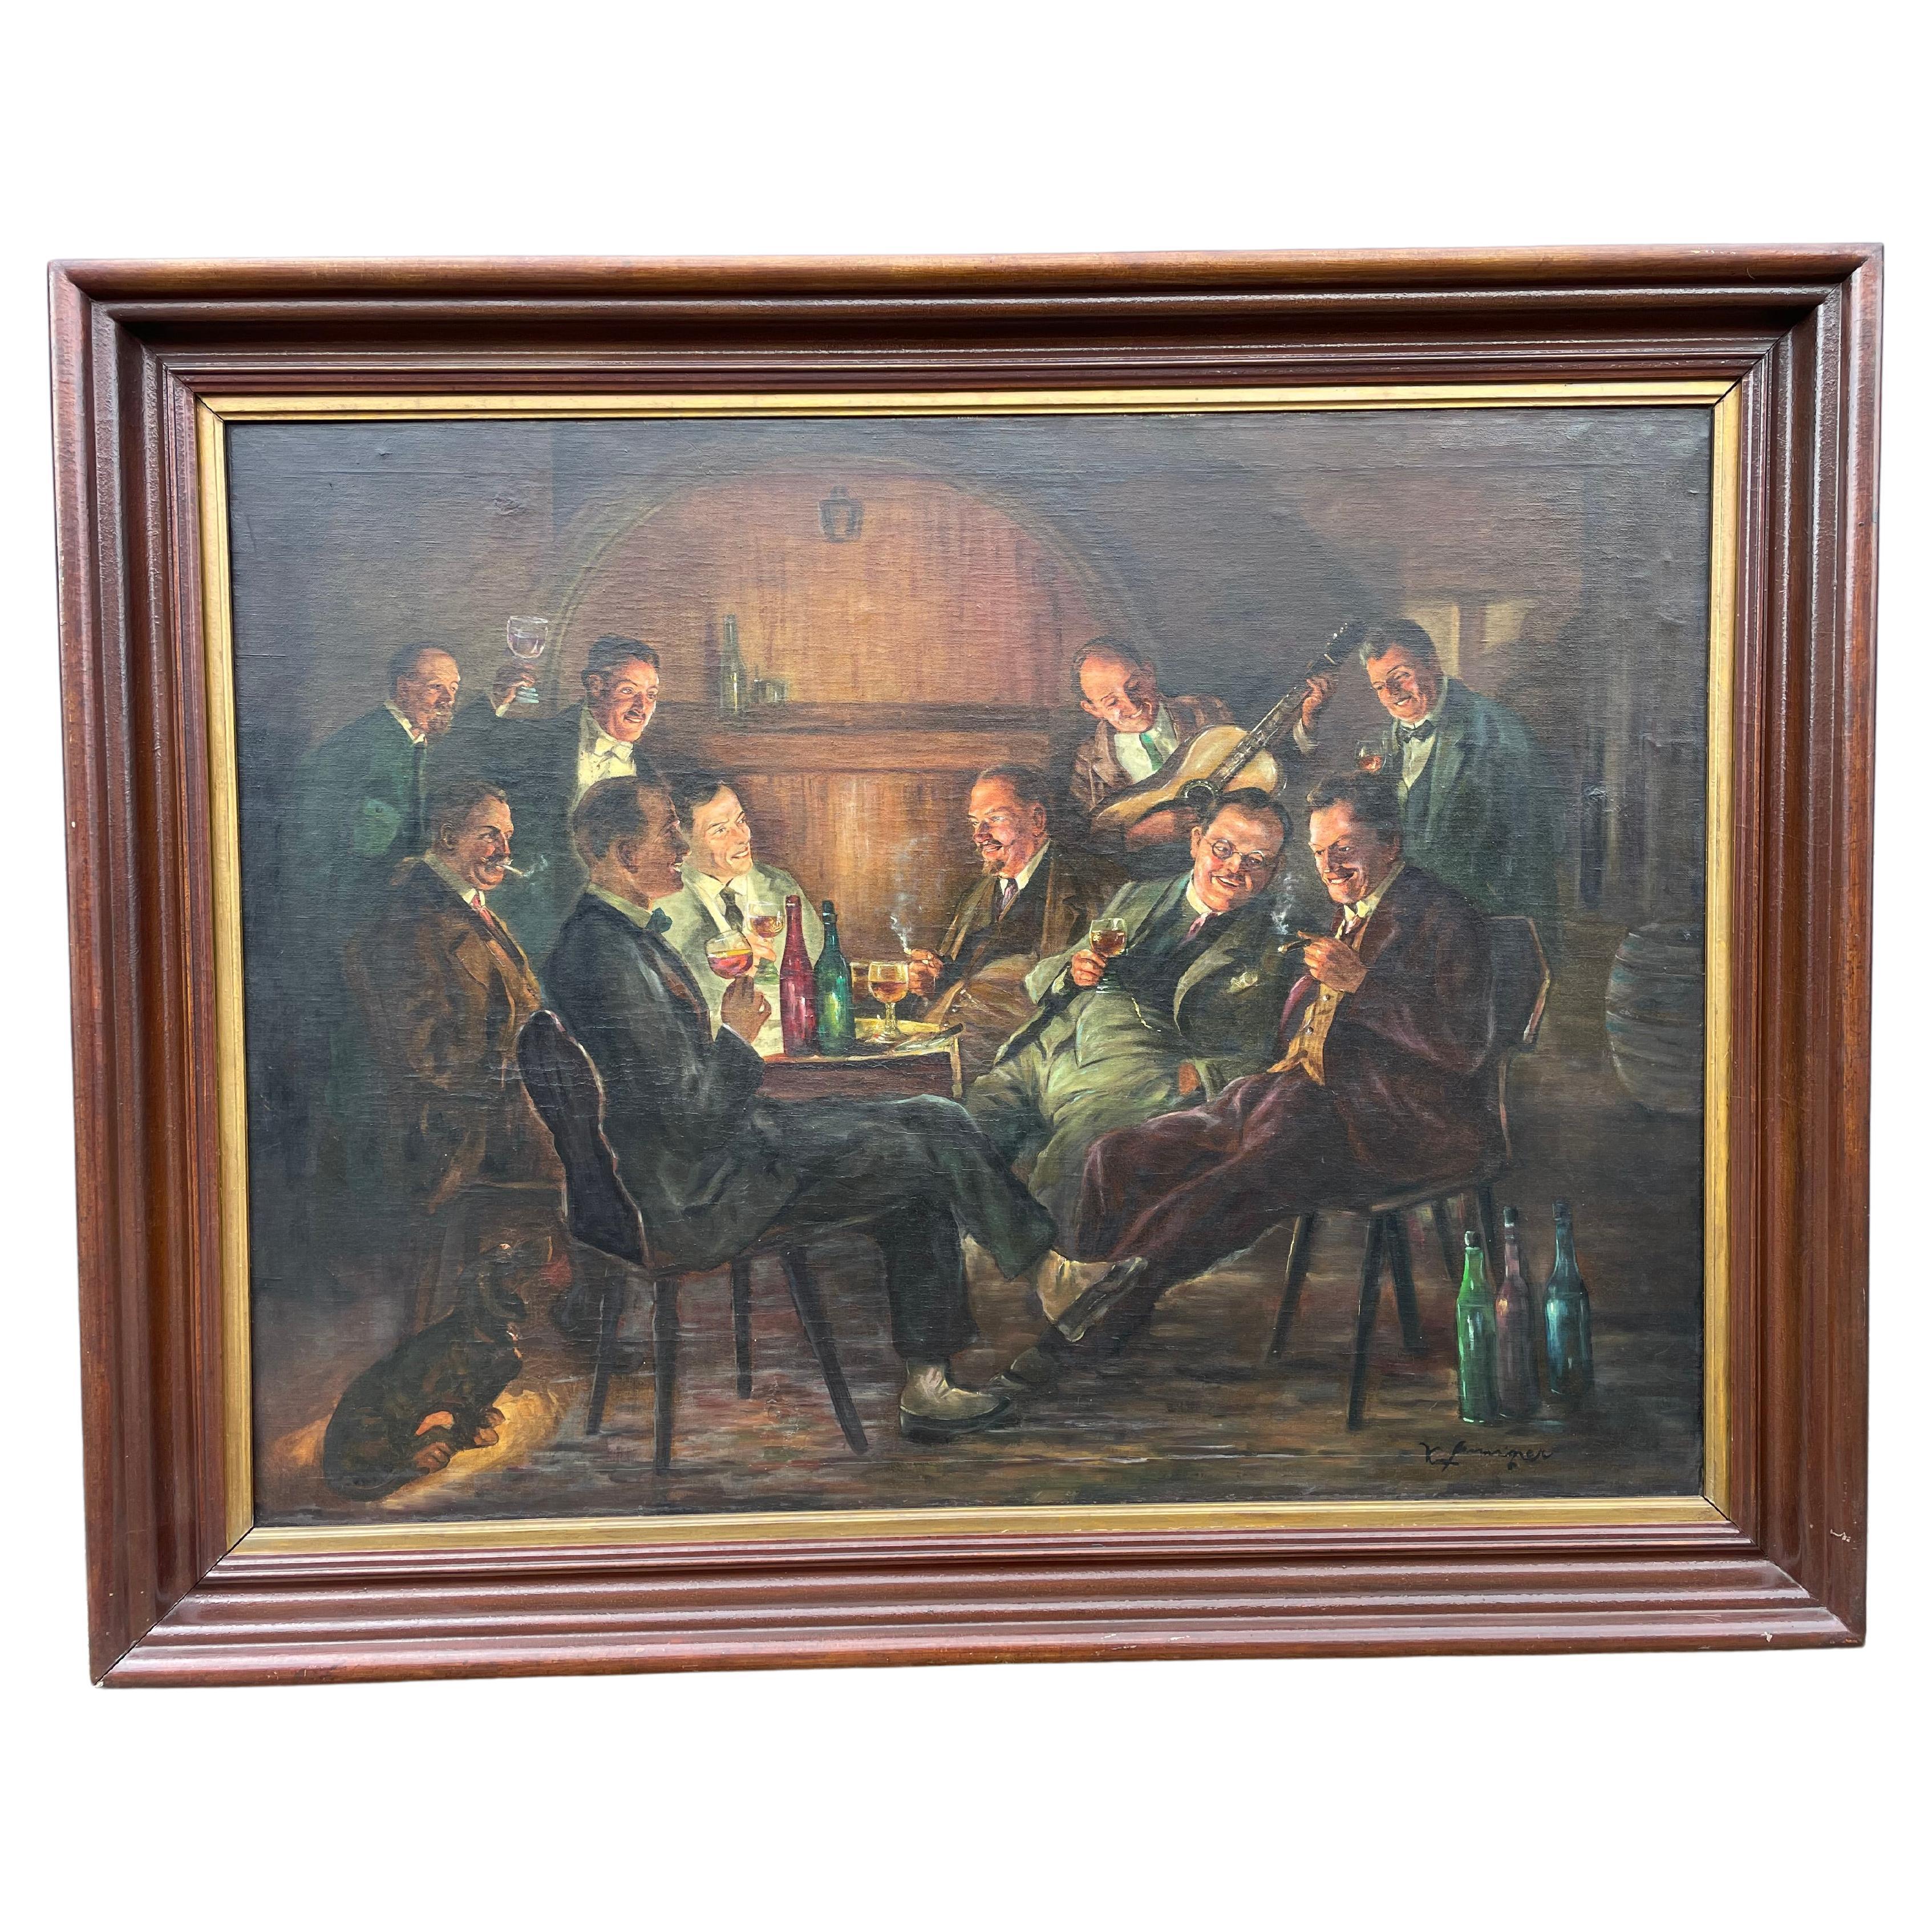 Grande huile sur toile ancienne « Celebration », des hommes buvant du vin et fumant